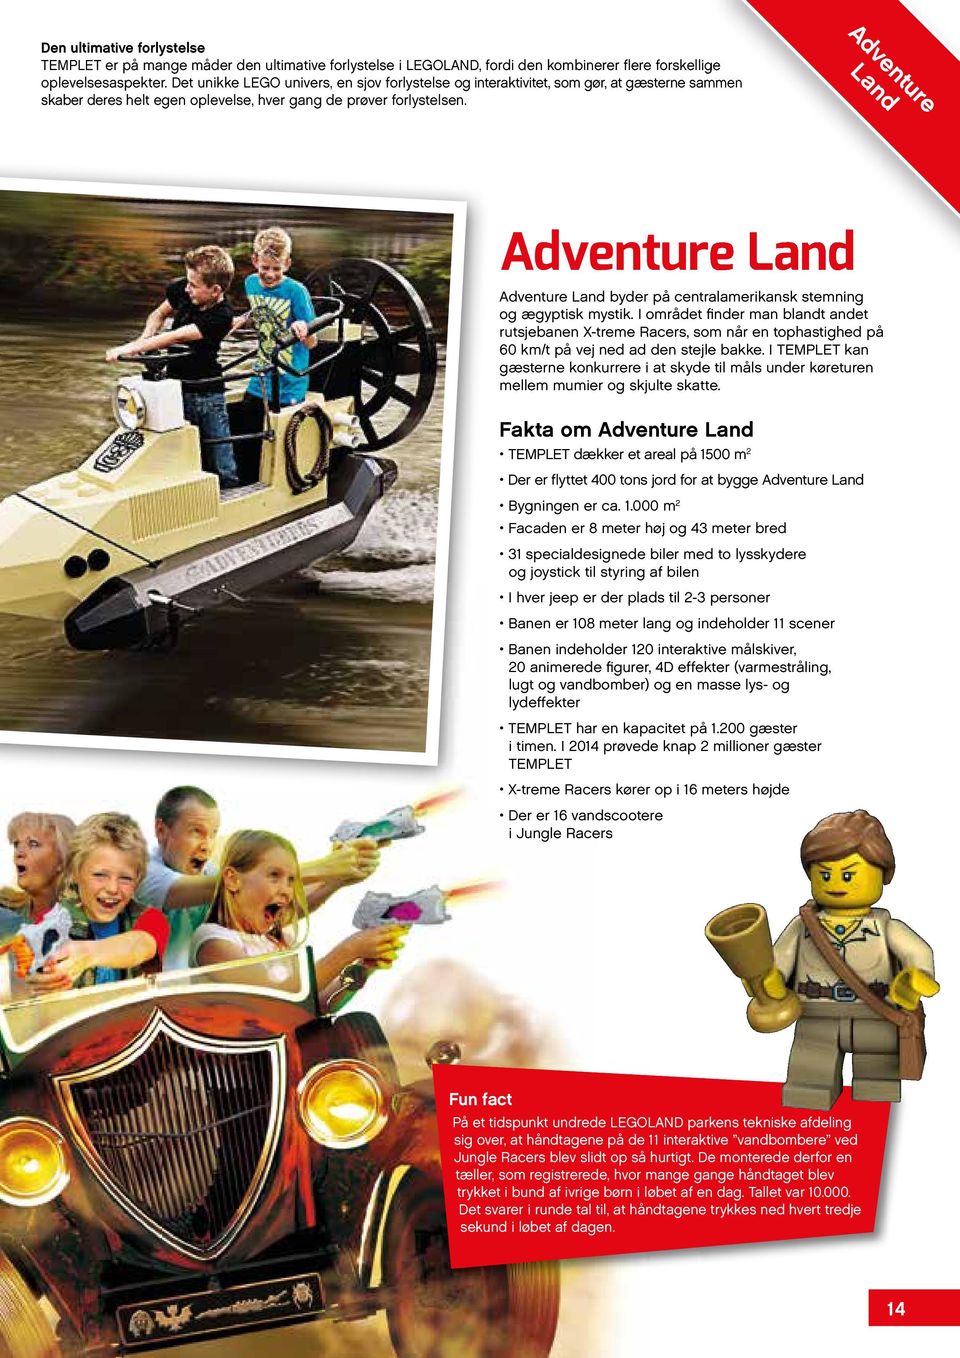 Adventure Land Adventure Land Adventure Land byder på centralamerikansk stemning og ægyptisk mystik.